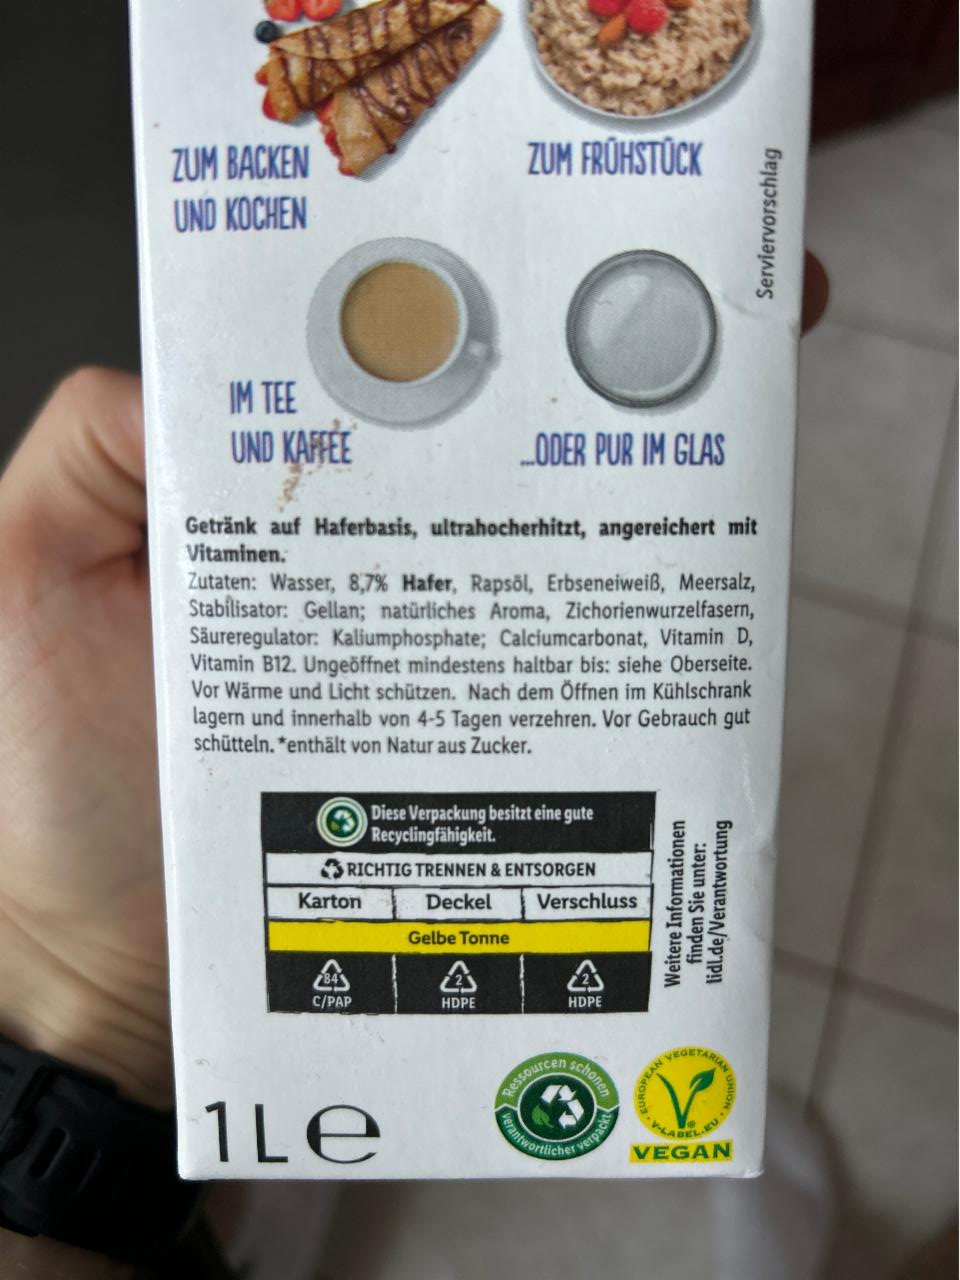 No milk Hafer 3,5% Vemondo kalória, kJ - és tápértékek